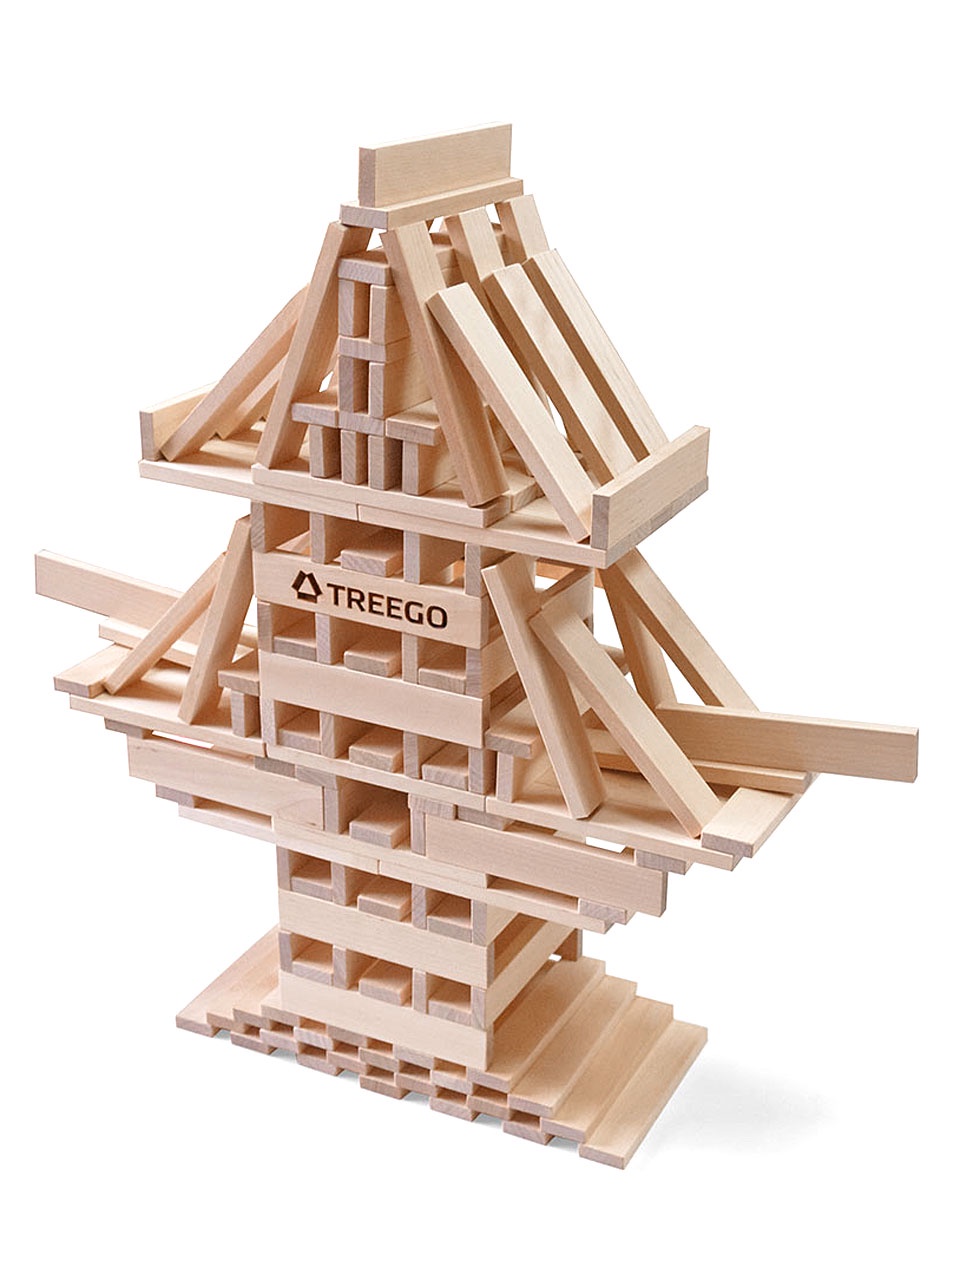 фото "Триго 70", игра-конструктор из дерева, набор из 71 дощечки